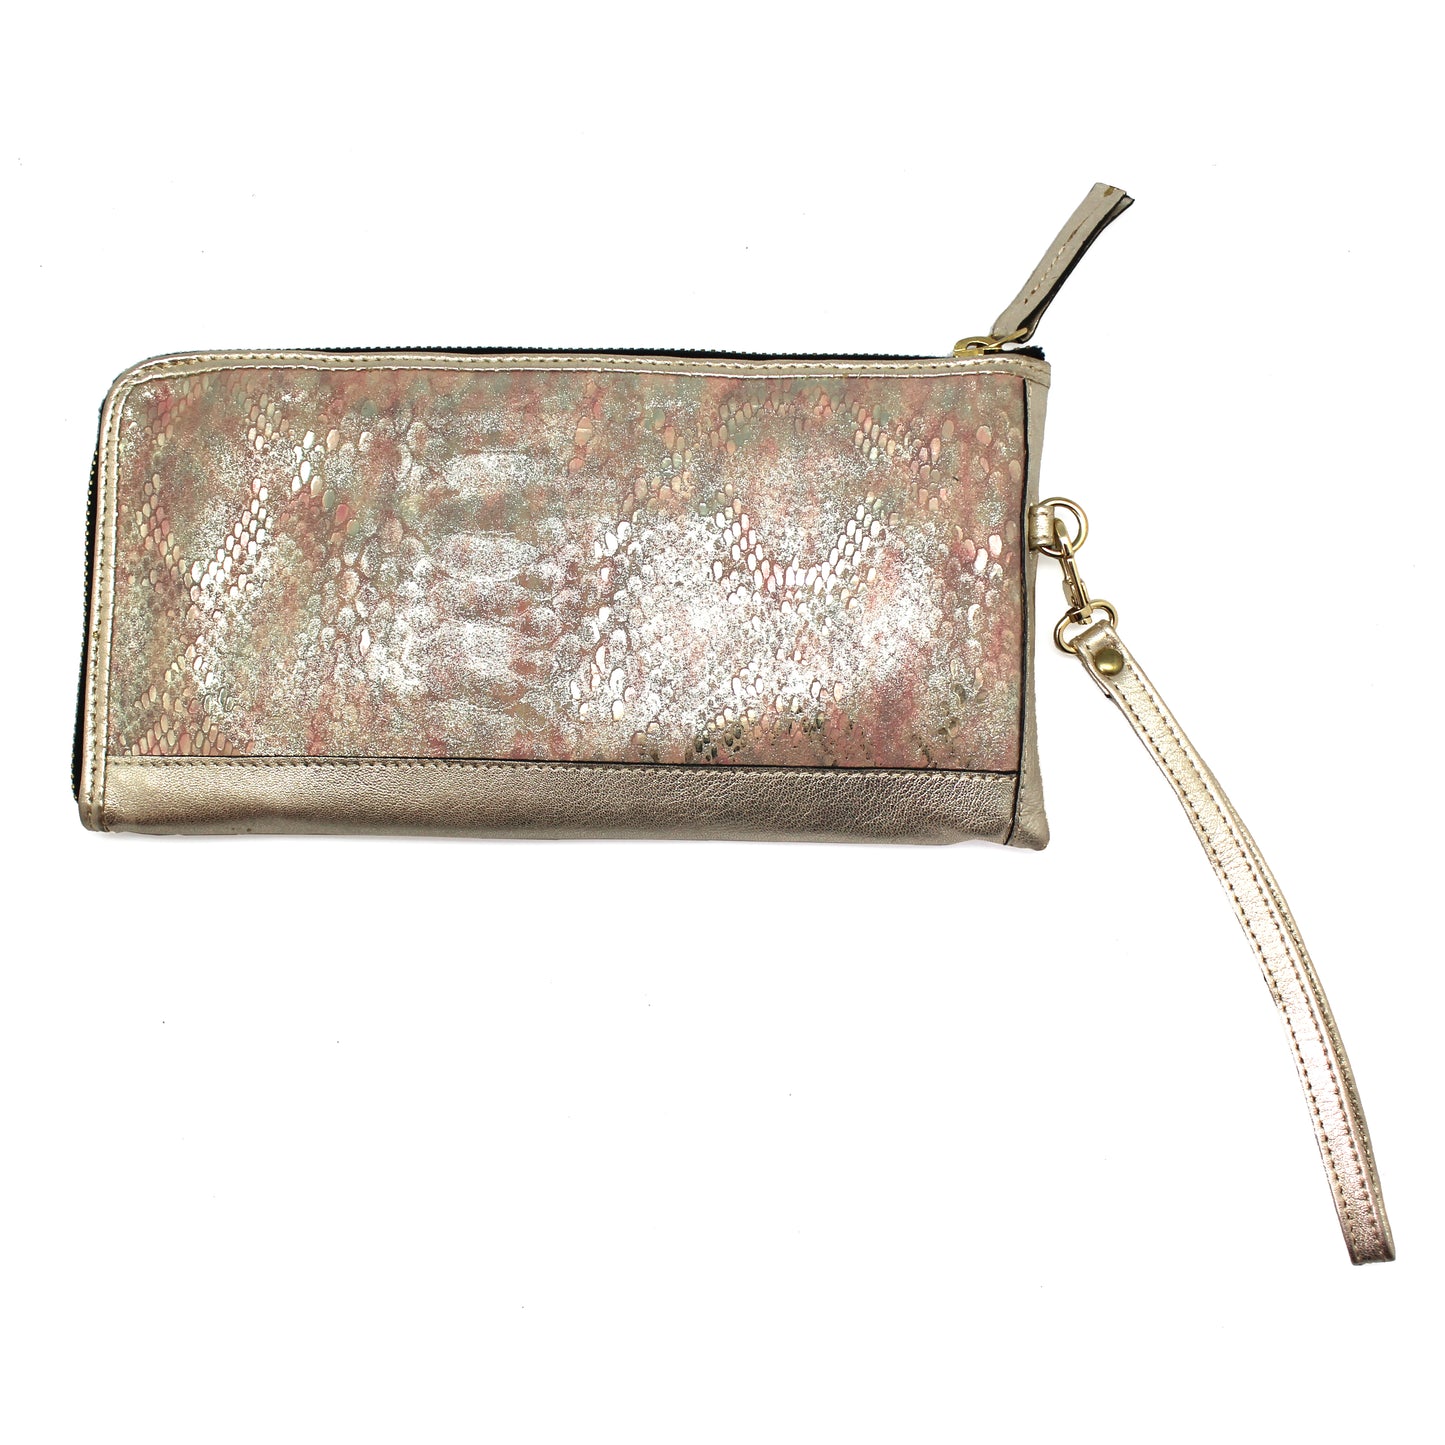 Savon - Champagne Pink wallet clutch